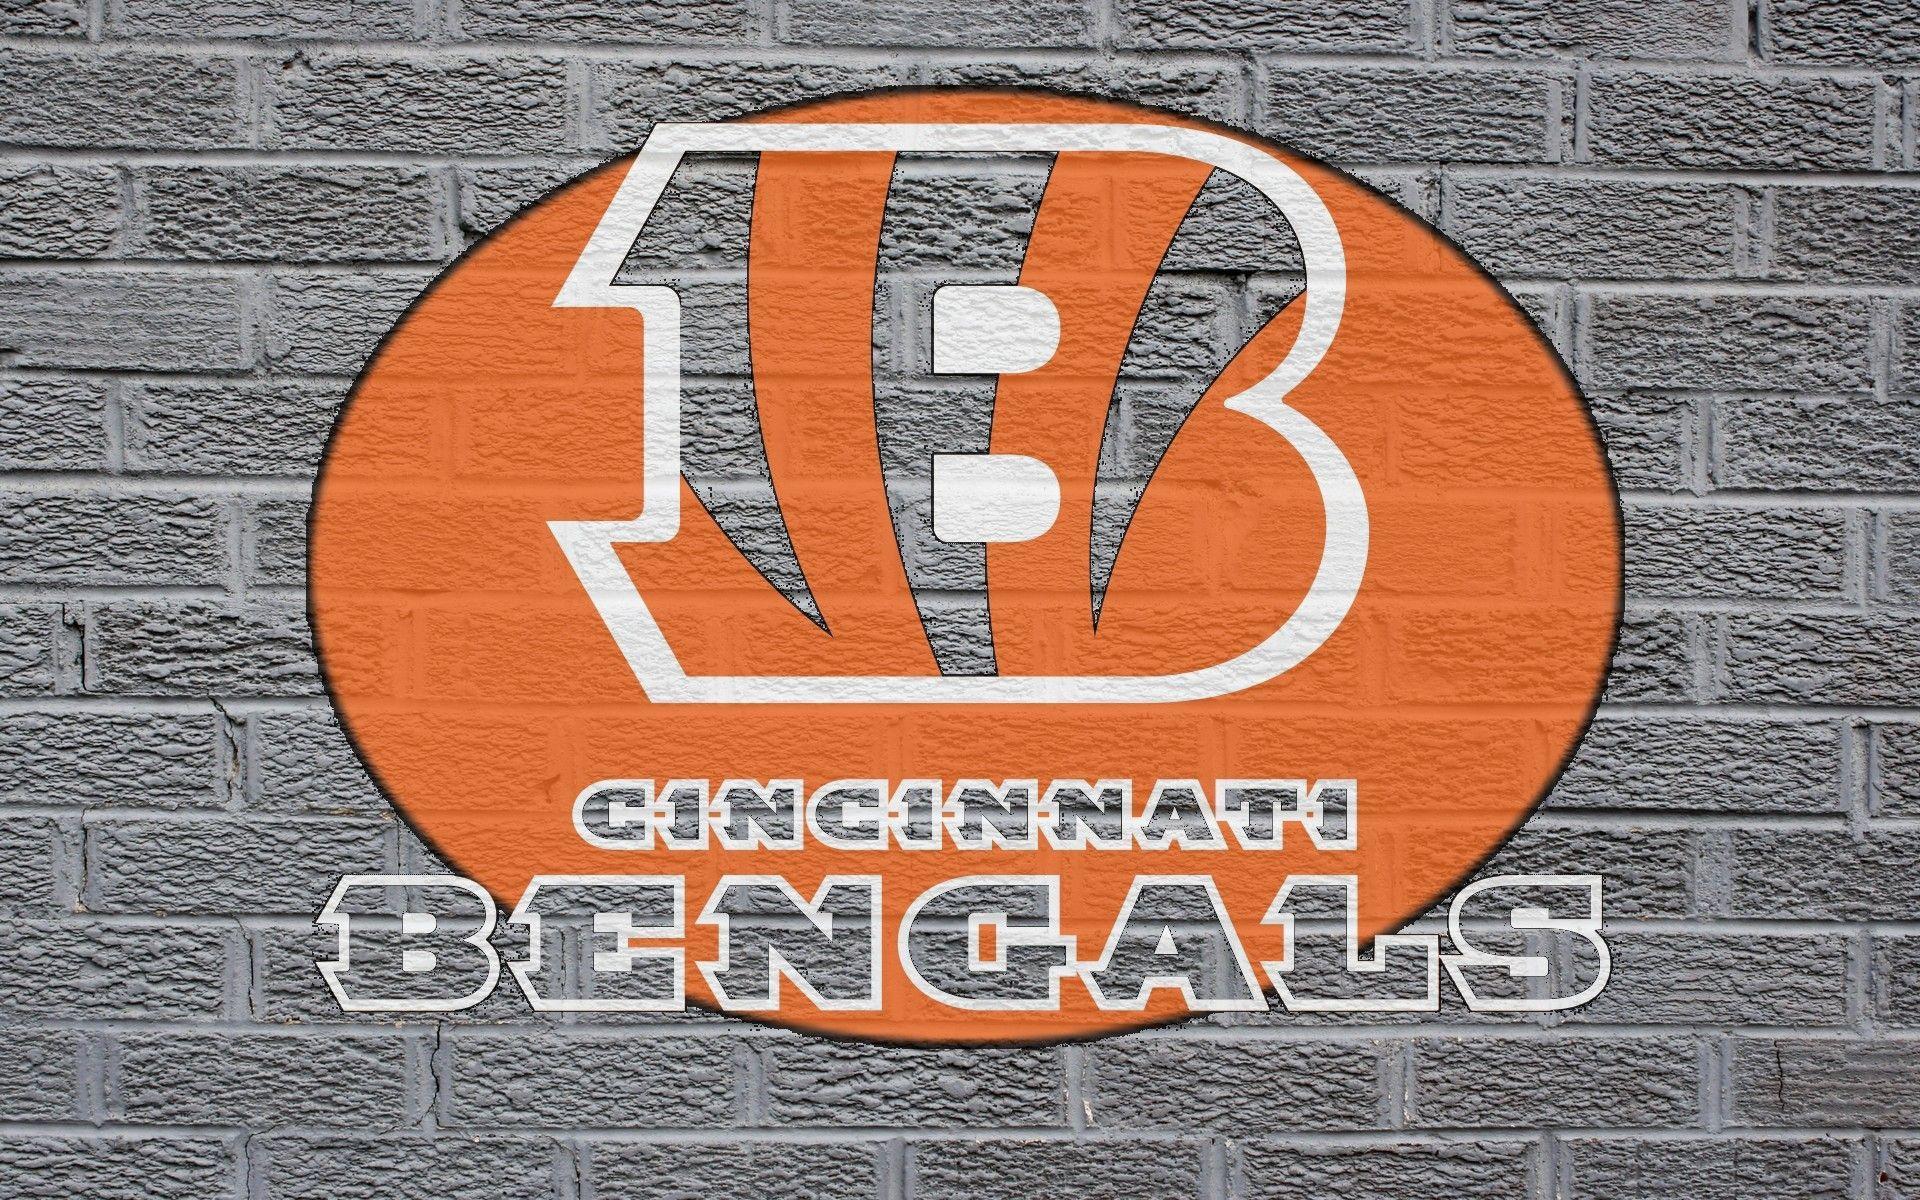 Cincinnati Bengals Wallpapers